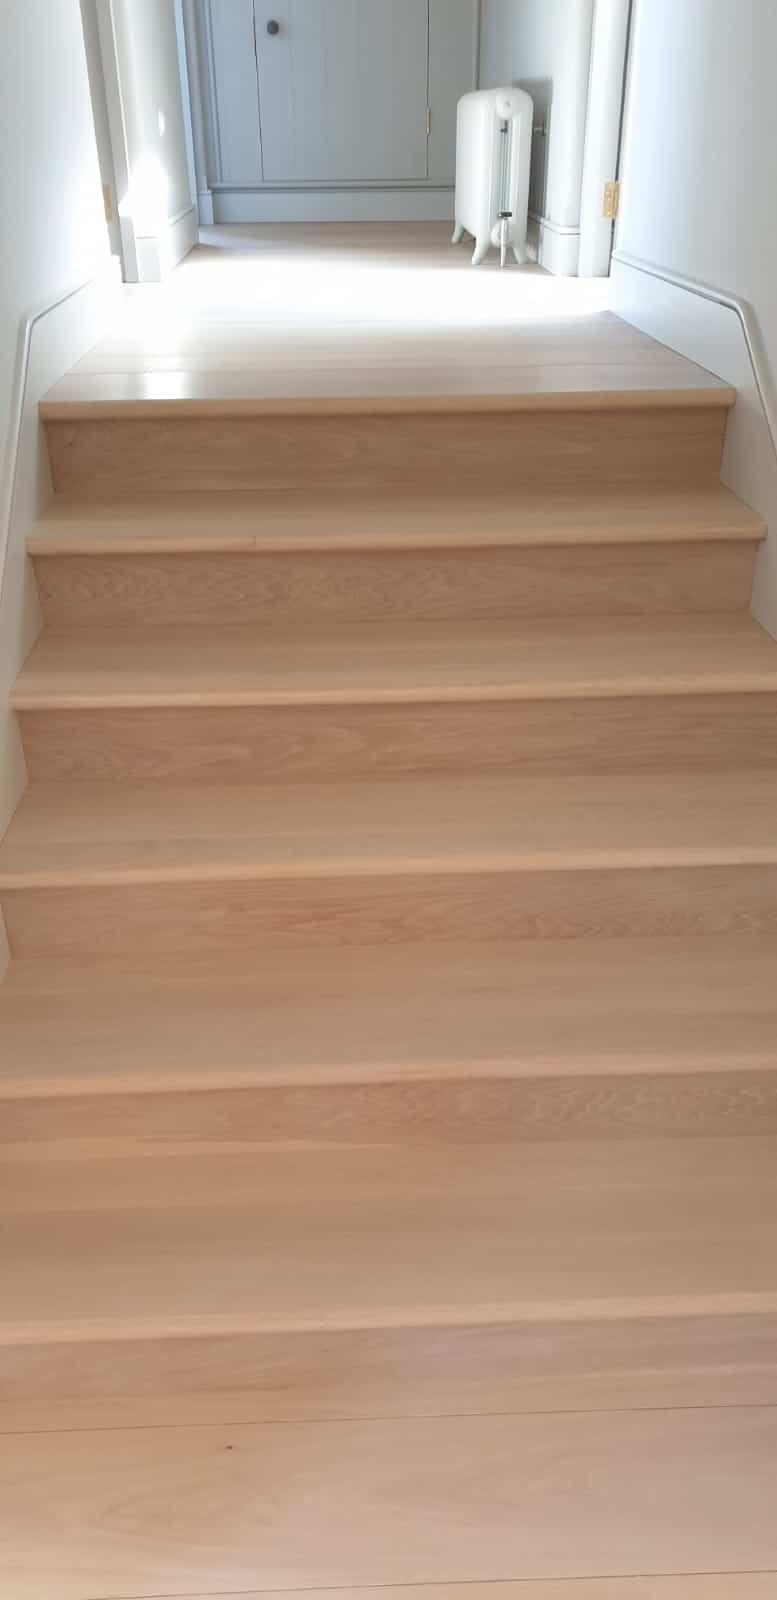 Istoria Bespoke Pale Oak 15x220mm planks wood floor engineered hardwood oak 2